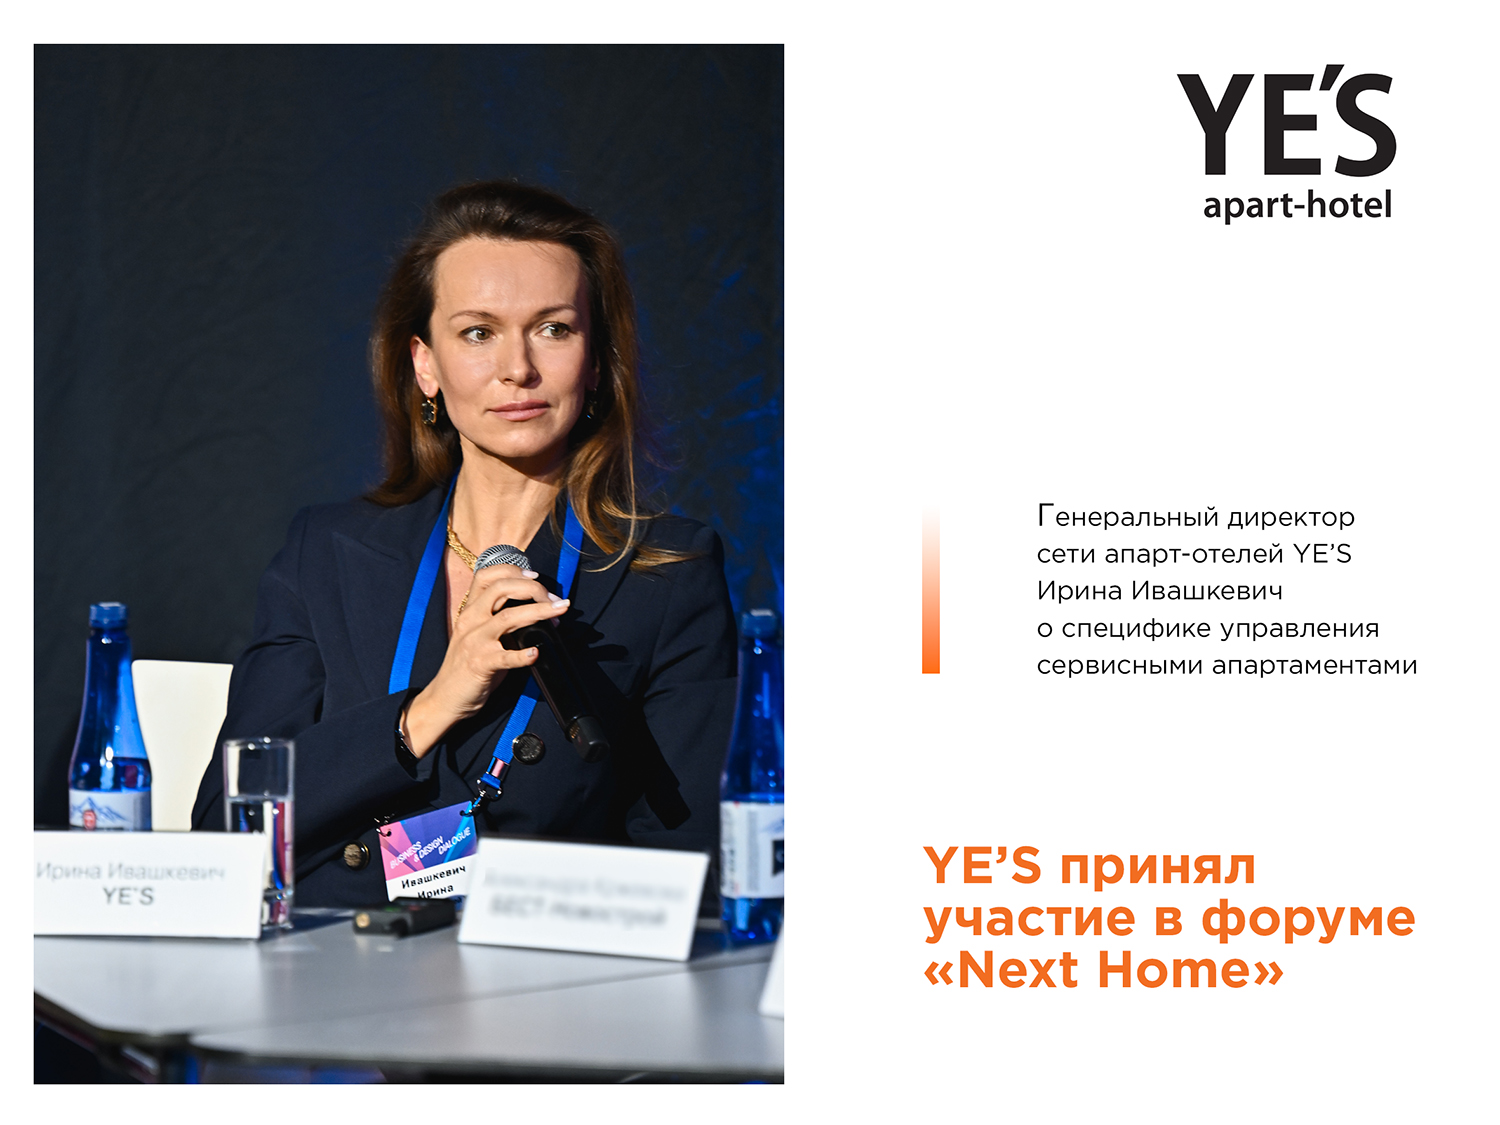 YE’S поучаствовал в форуме-выставке «Next Home»